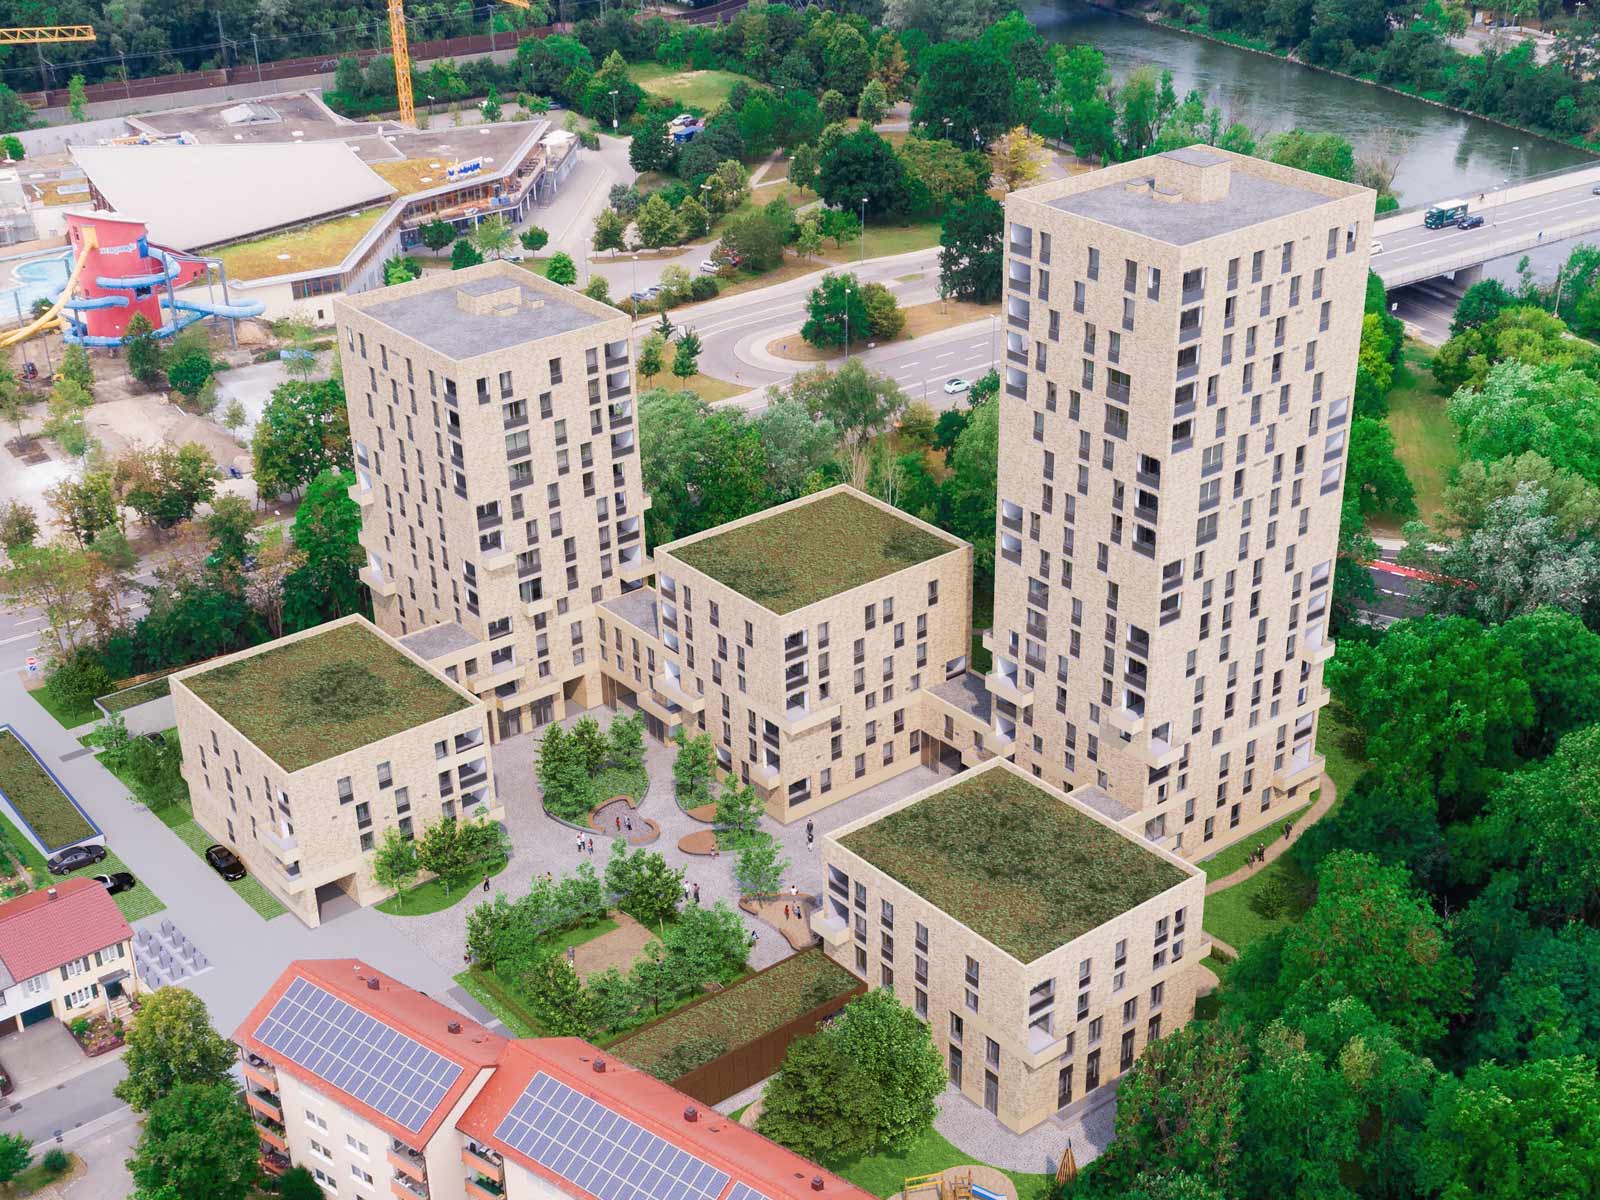 Visualisierung des neubaus an der Stargarder Straße Ingolstadt: 3 niedrige und 2 hohe Gebäude mit hellbrauner Fassade im Grünen.